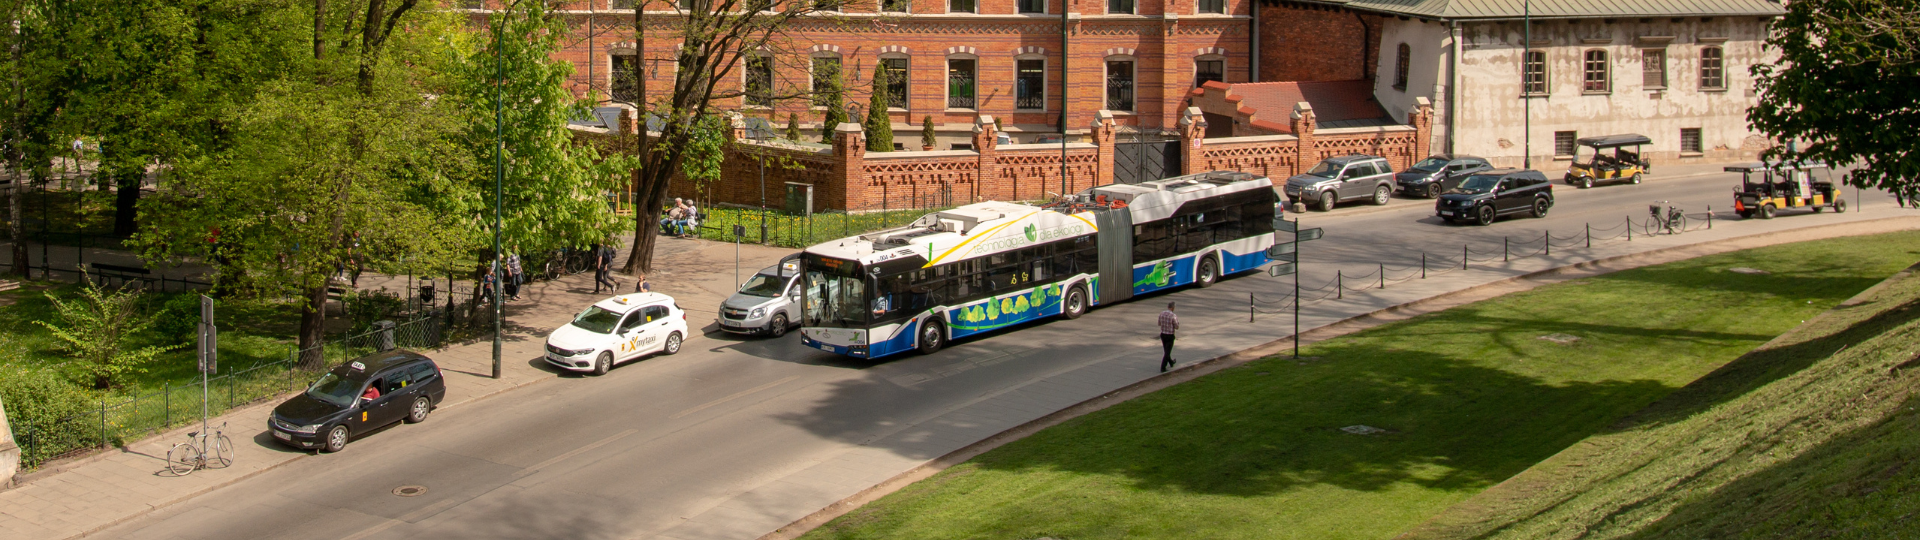 18 gelenkige Solaris-Elektrobusse fahren nach Krakau